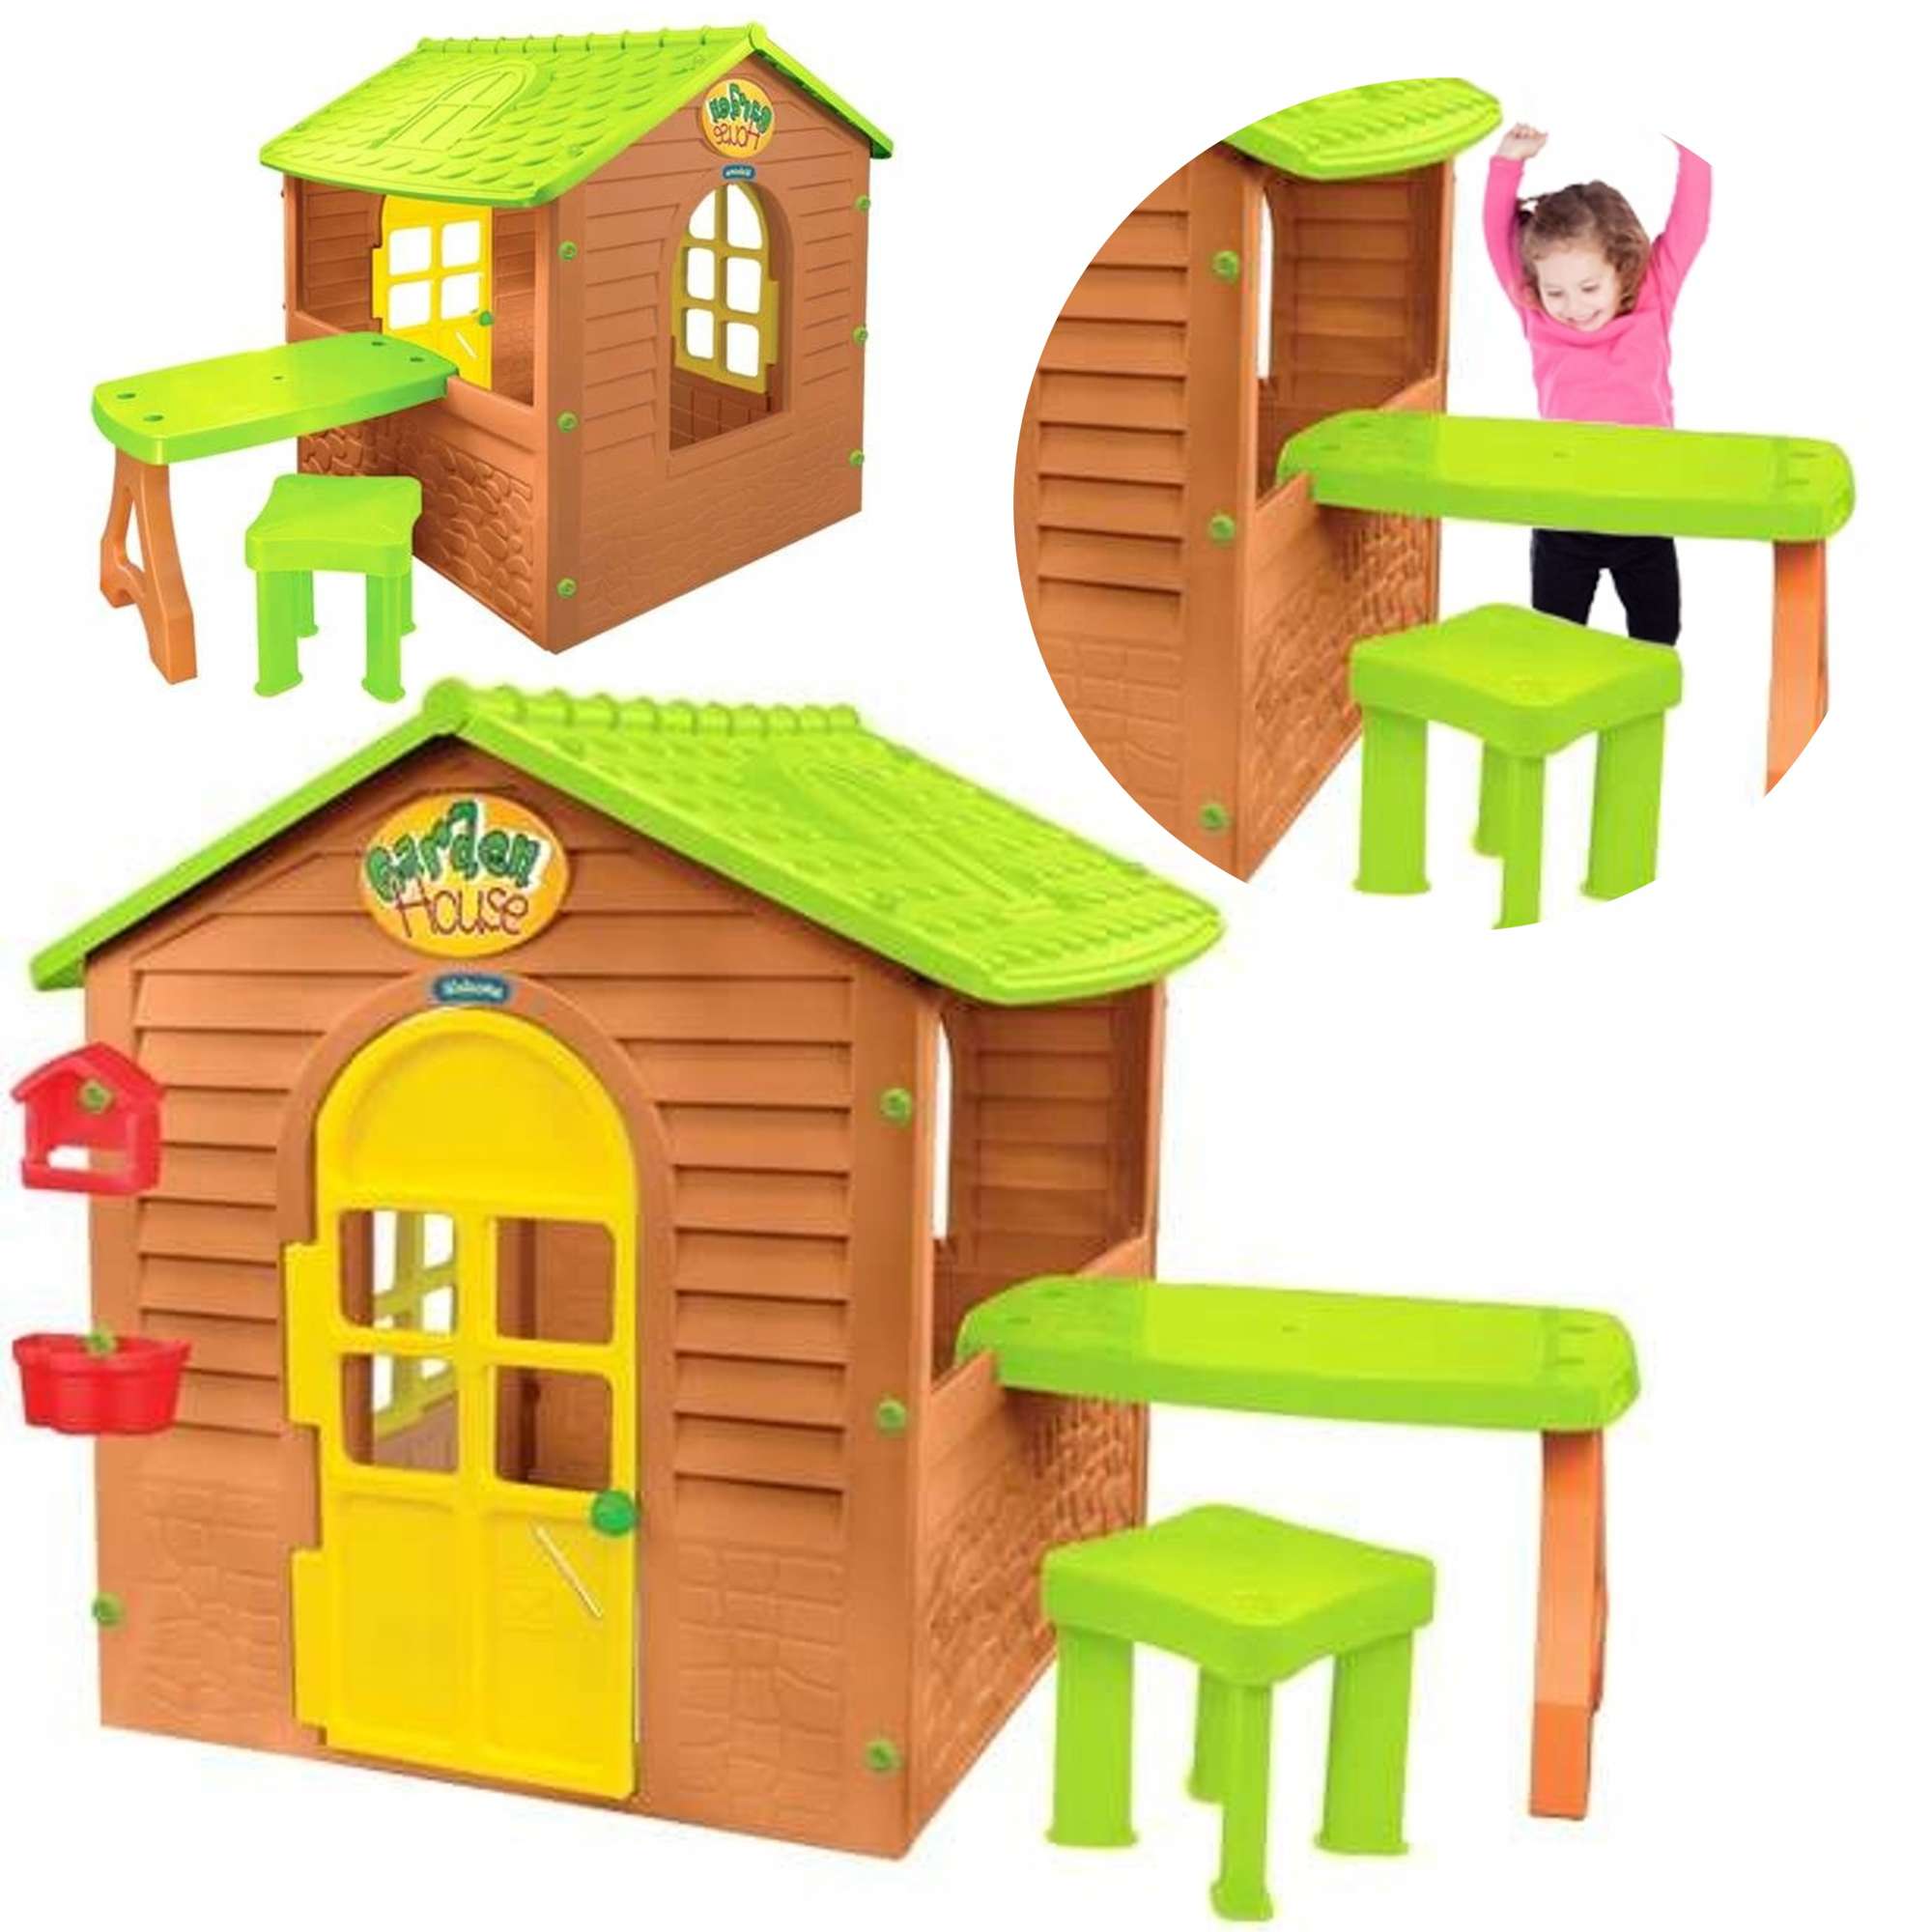 Stabilny kolorowy Domek ogrodowy dla dzieci ze stolikiem i krzesekiem Mochtoys